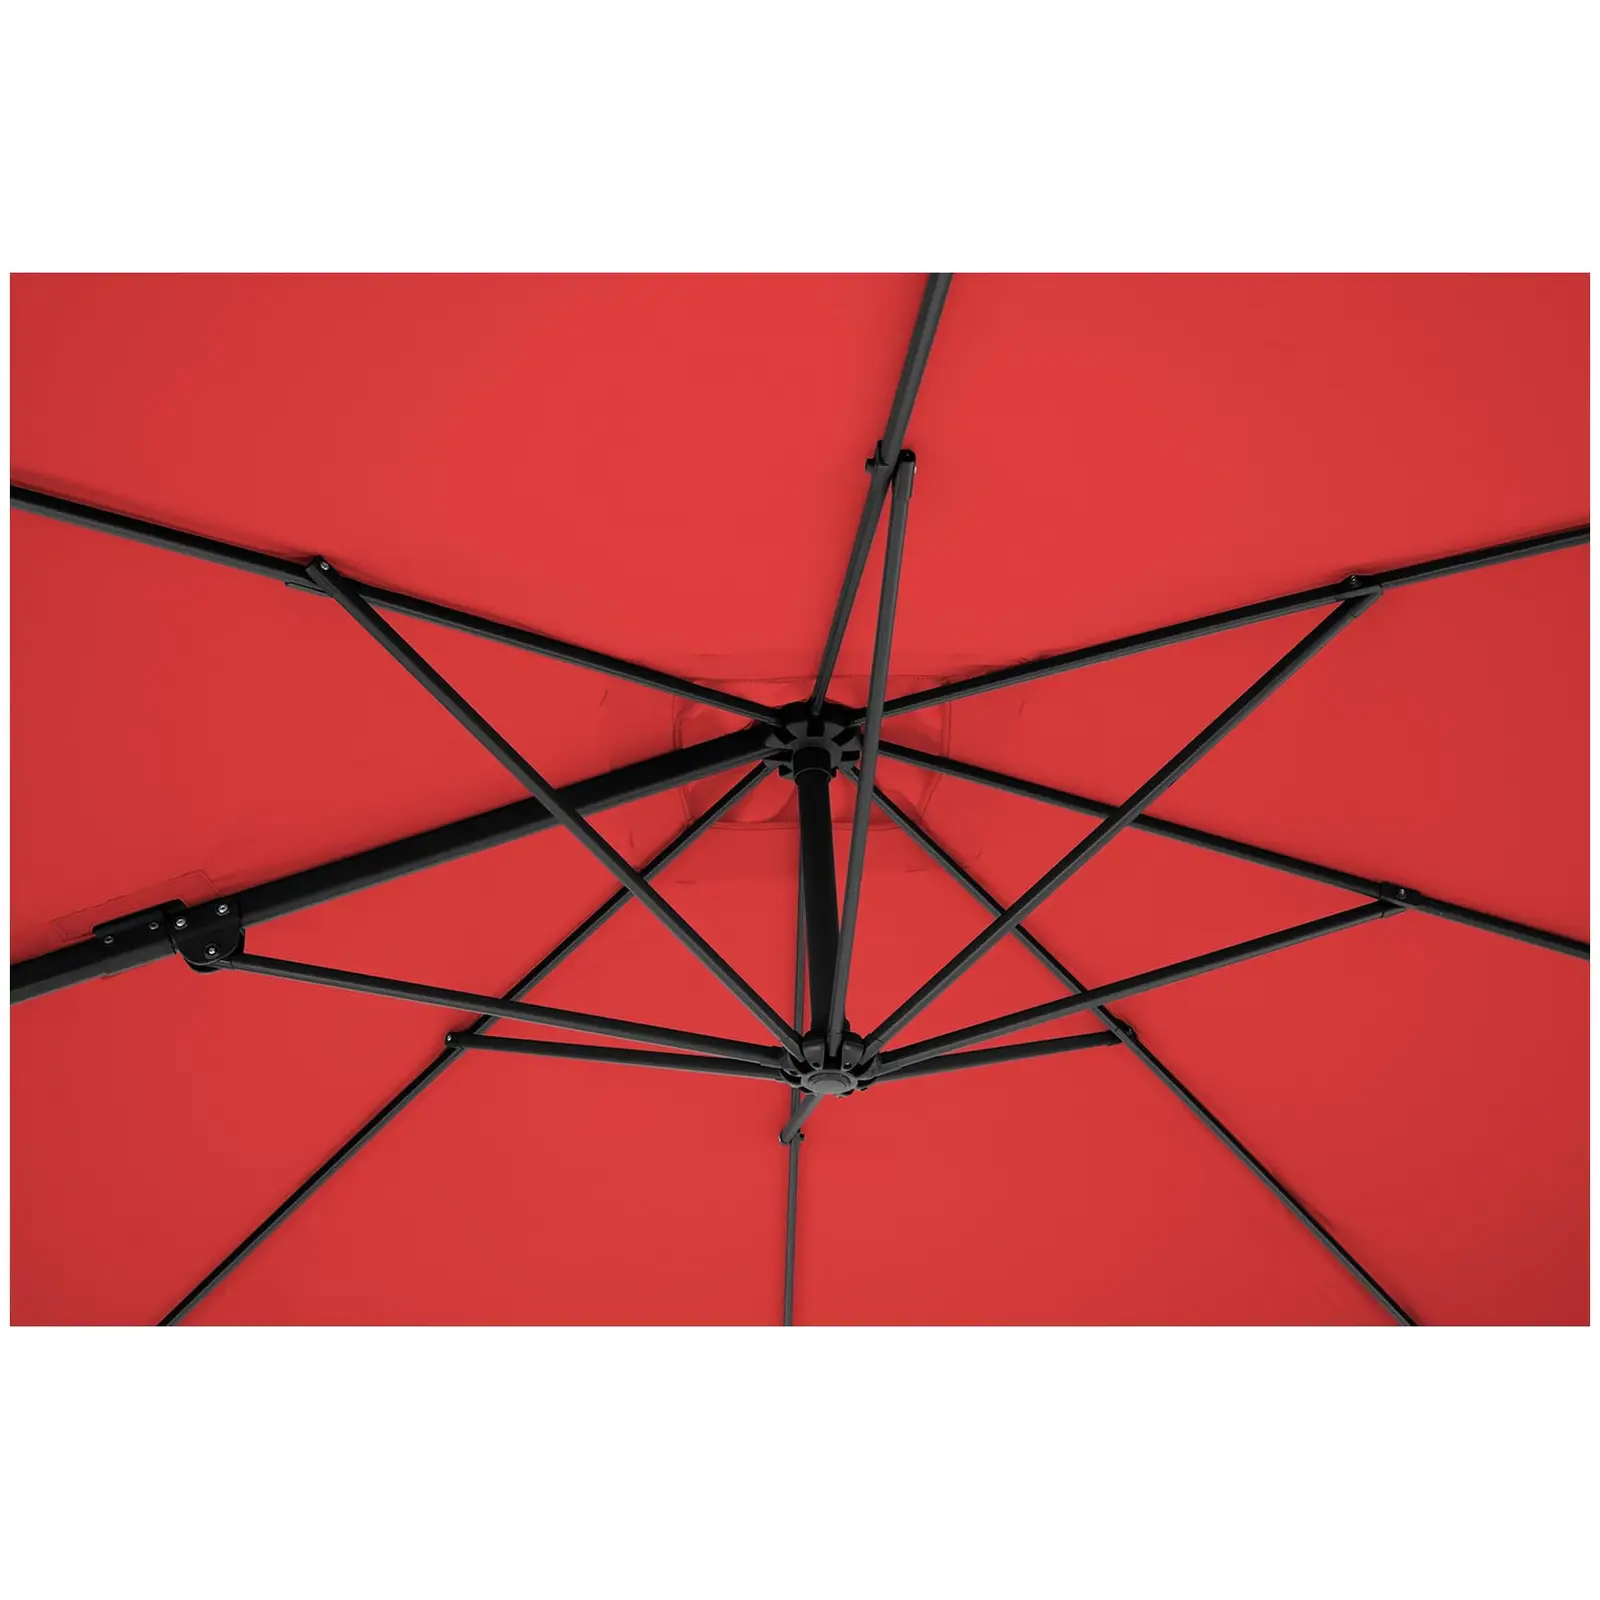 Ampelschirm - rot - viereckig - 250 x 250 cm - drehbar